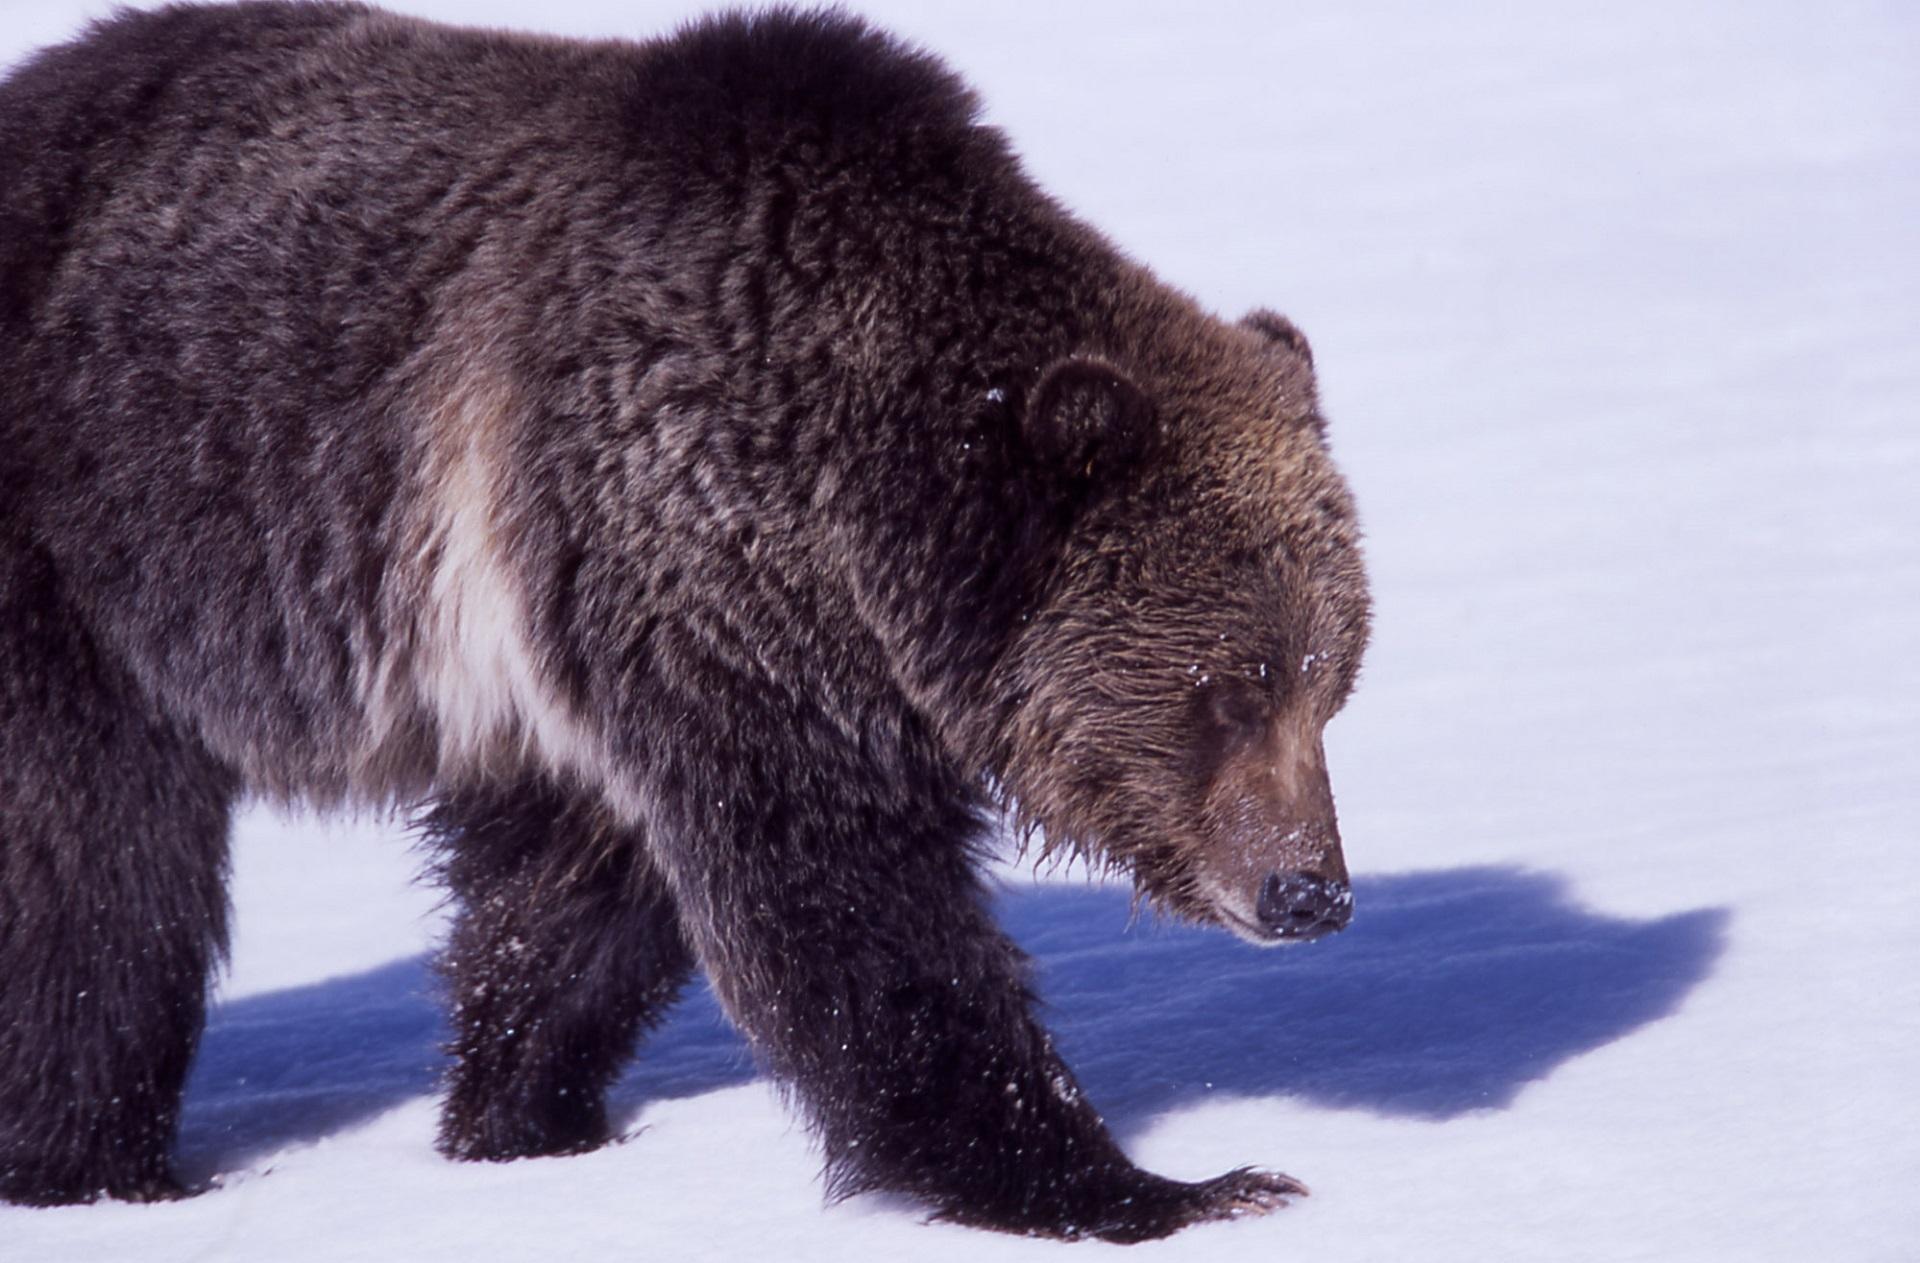 Зимний пейзаж с Машей и медведем: JPG формат | Маша и медведь зима Фото  №797797 скачать